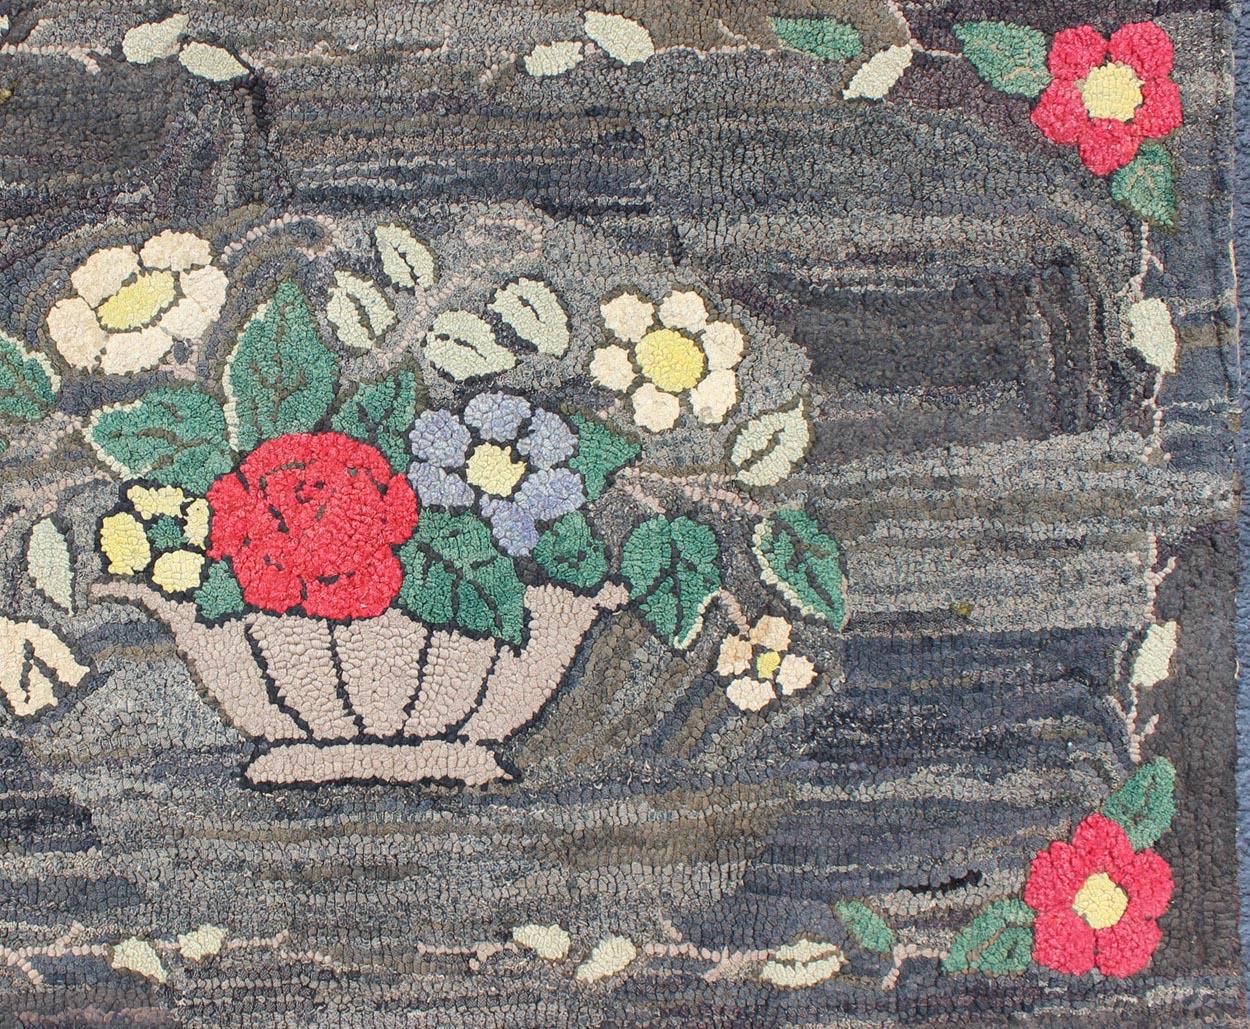 Anthrazitfarbener, roter und grüner antiker amerikanischer Knüpfteppich mit großem Blumenmuster, Keivan Woven Arts / Teppich S12-0807, Herkunftsland / Typ: Vereinigte Staaten / Häkelteppich, um 1900

Dieser farbenfrohe American Hooked-Teppich